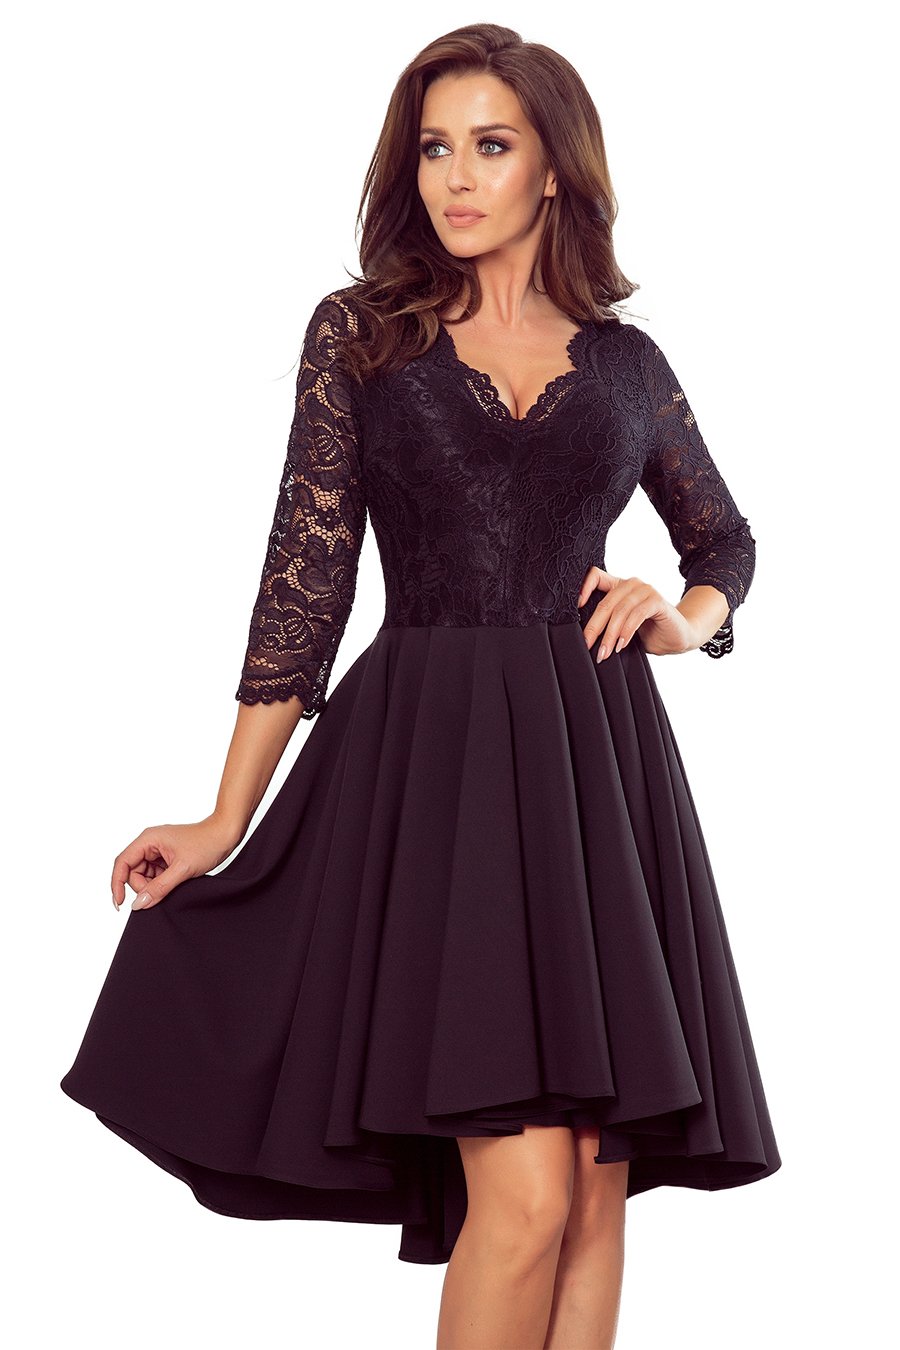 Γυναικείο φόρεμα Dottie, Μαύρο 2